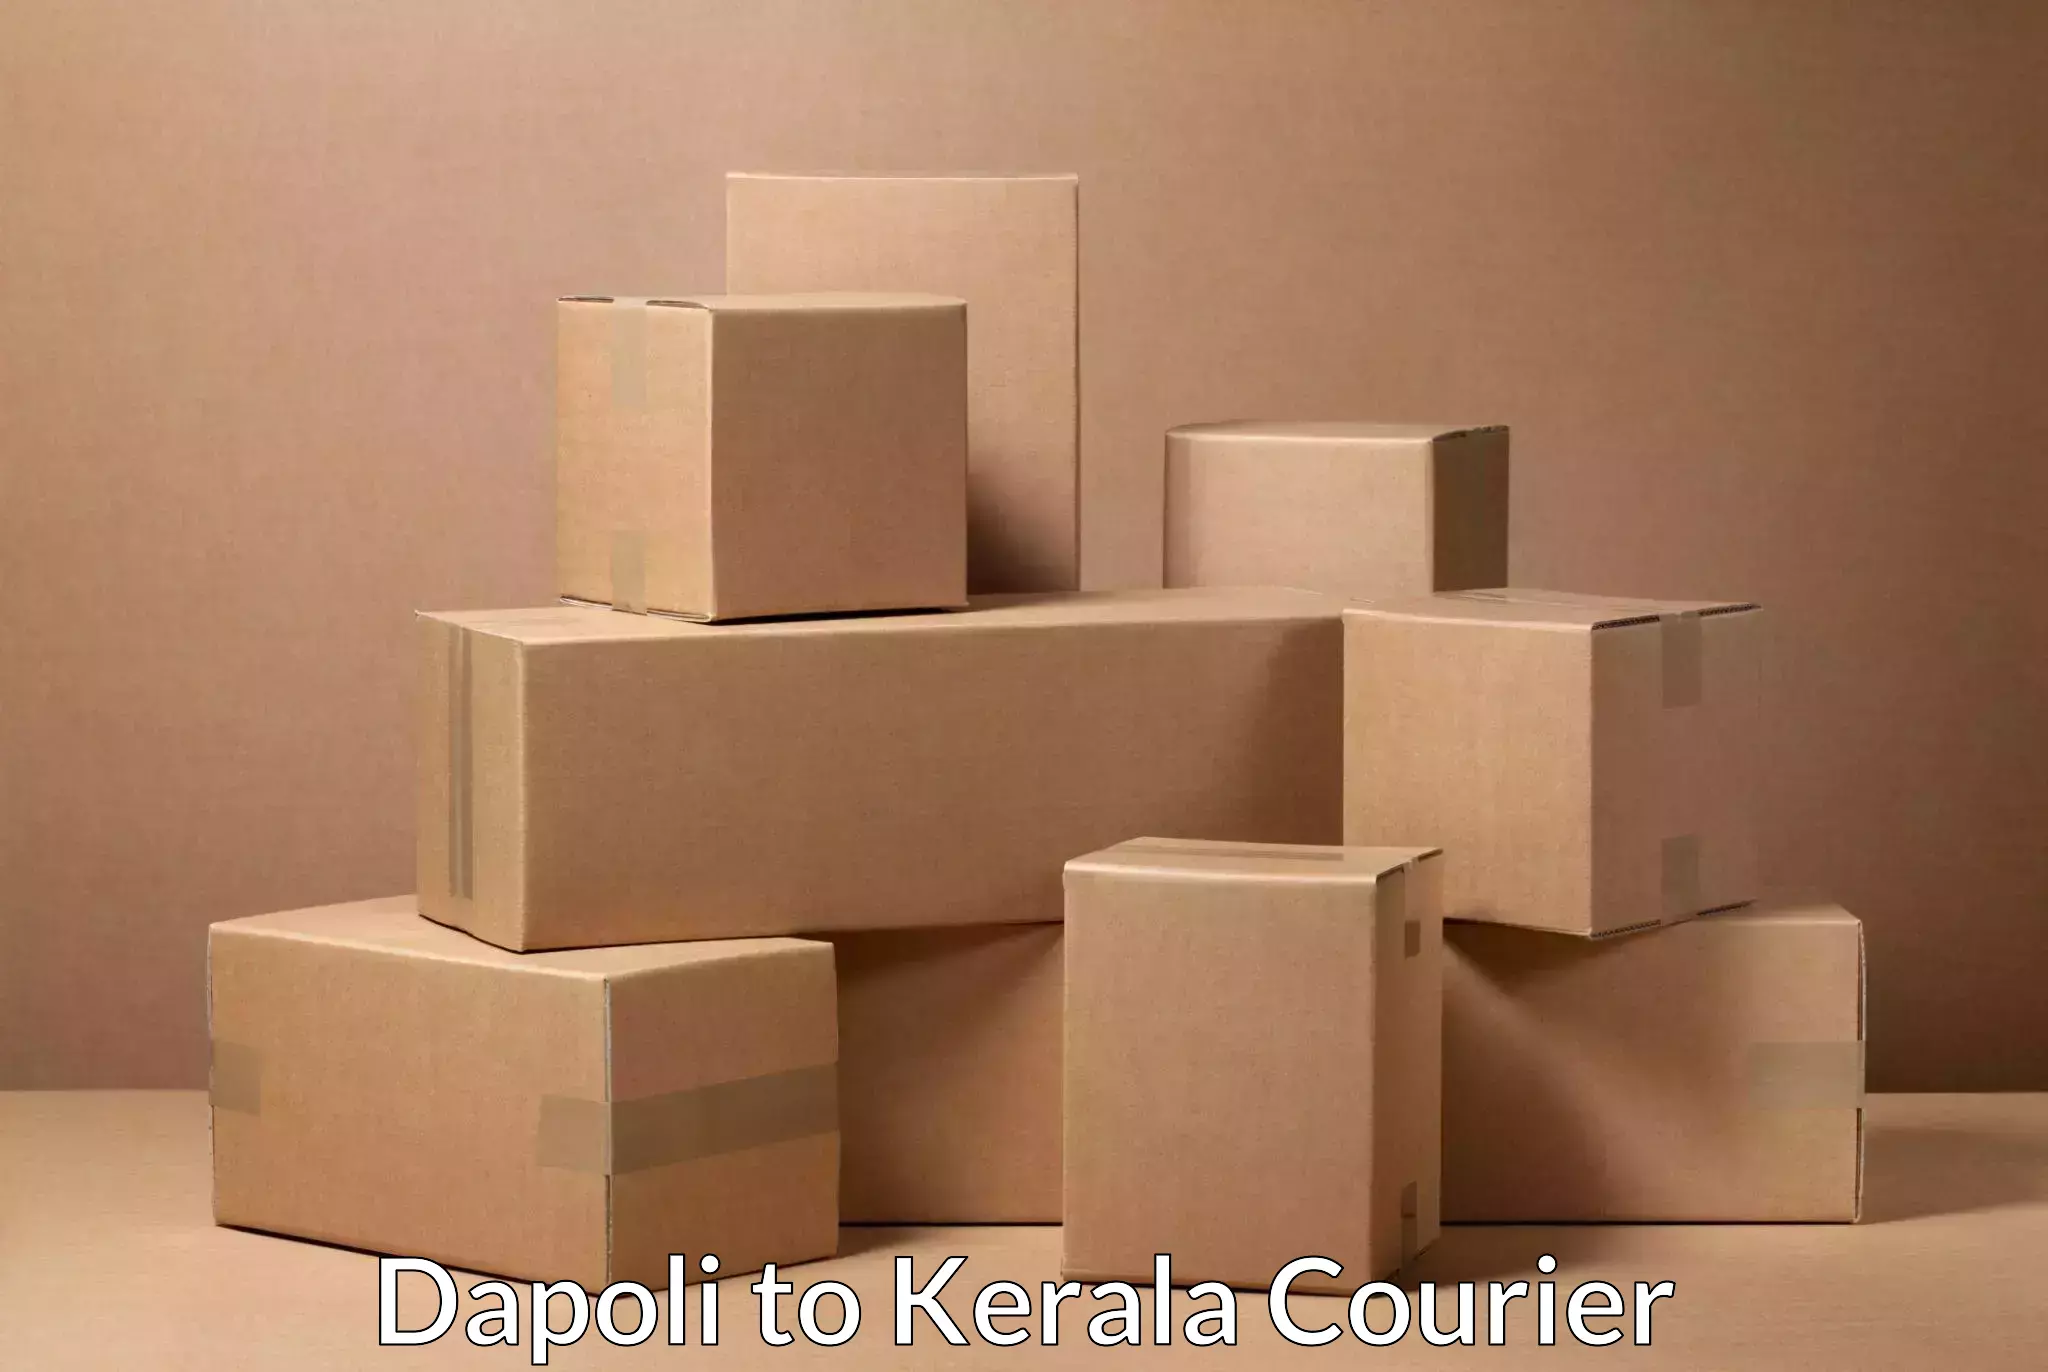 Next day courier Dapoli to Kerala